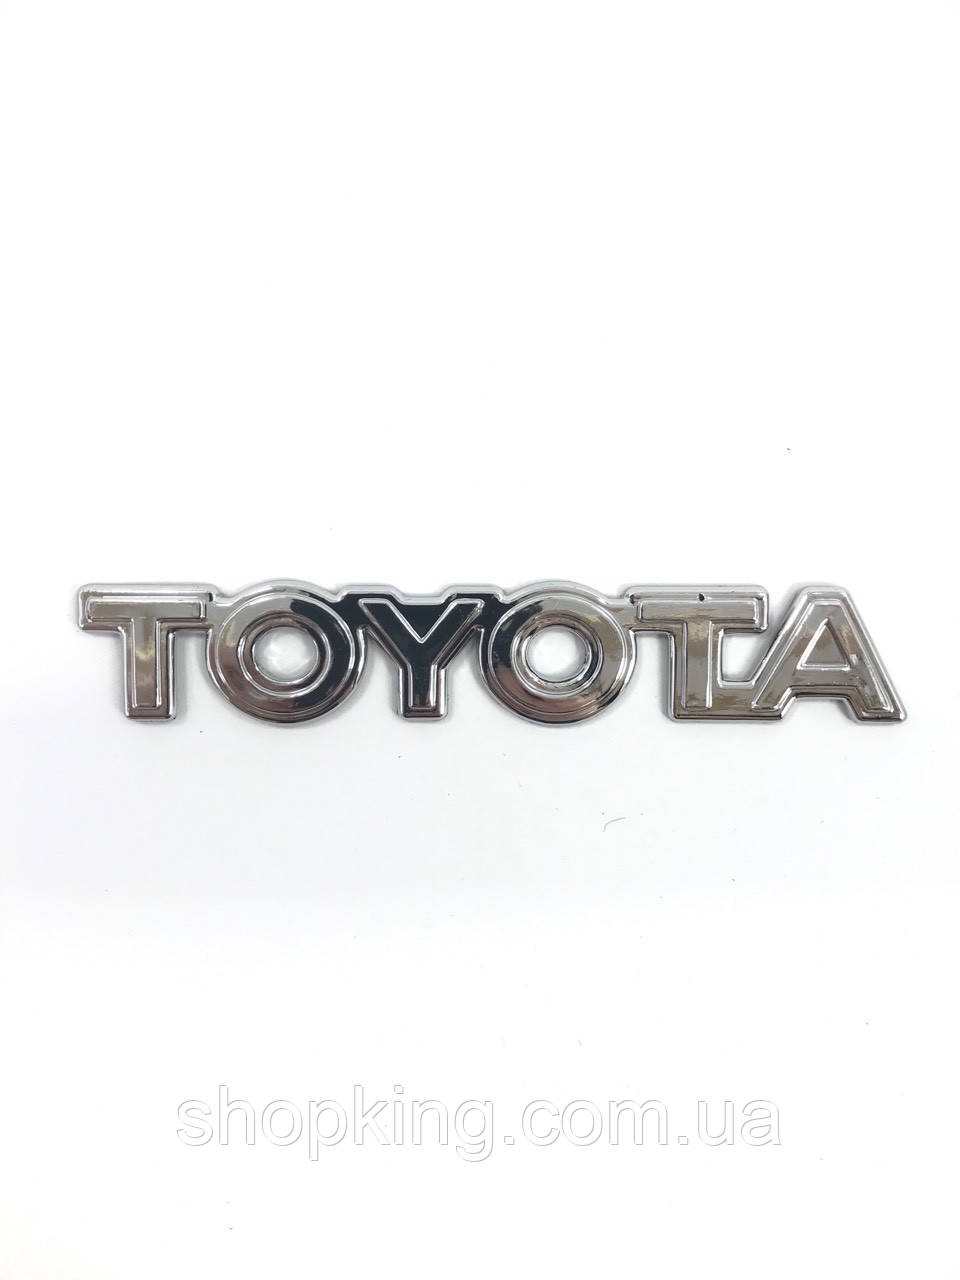 

Эмблема автомобильная, логотип тойота (TOYOTA) 140*25 мм